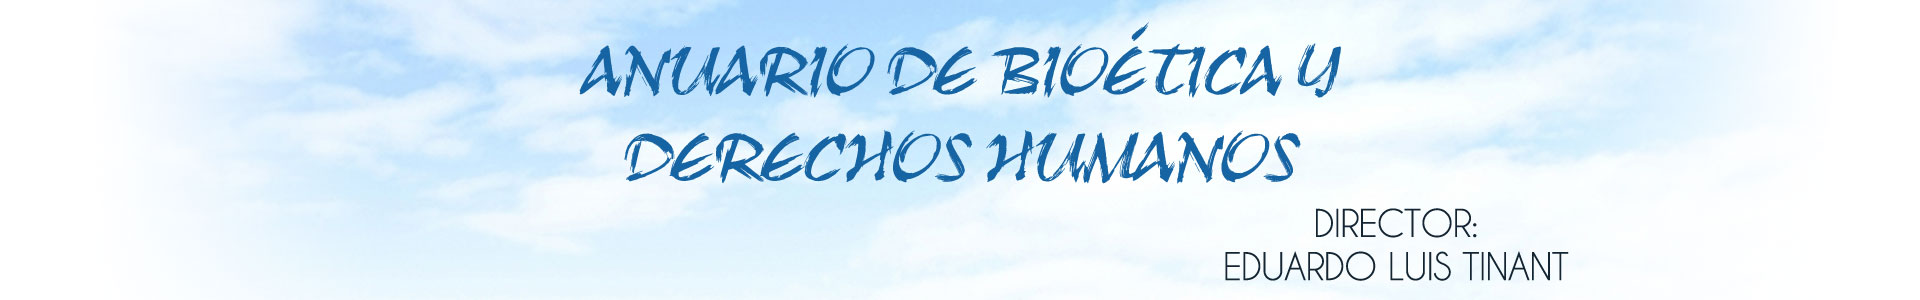 Anuario de Bioética y Derechos Humanos